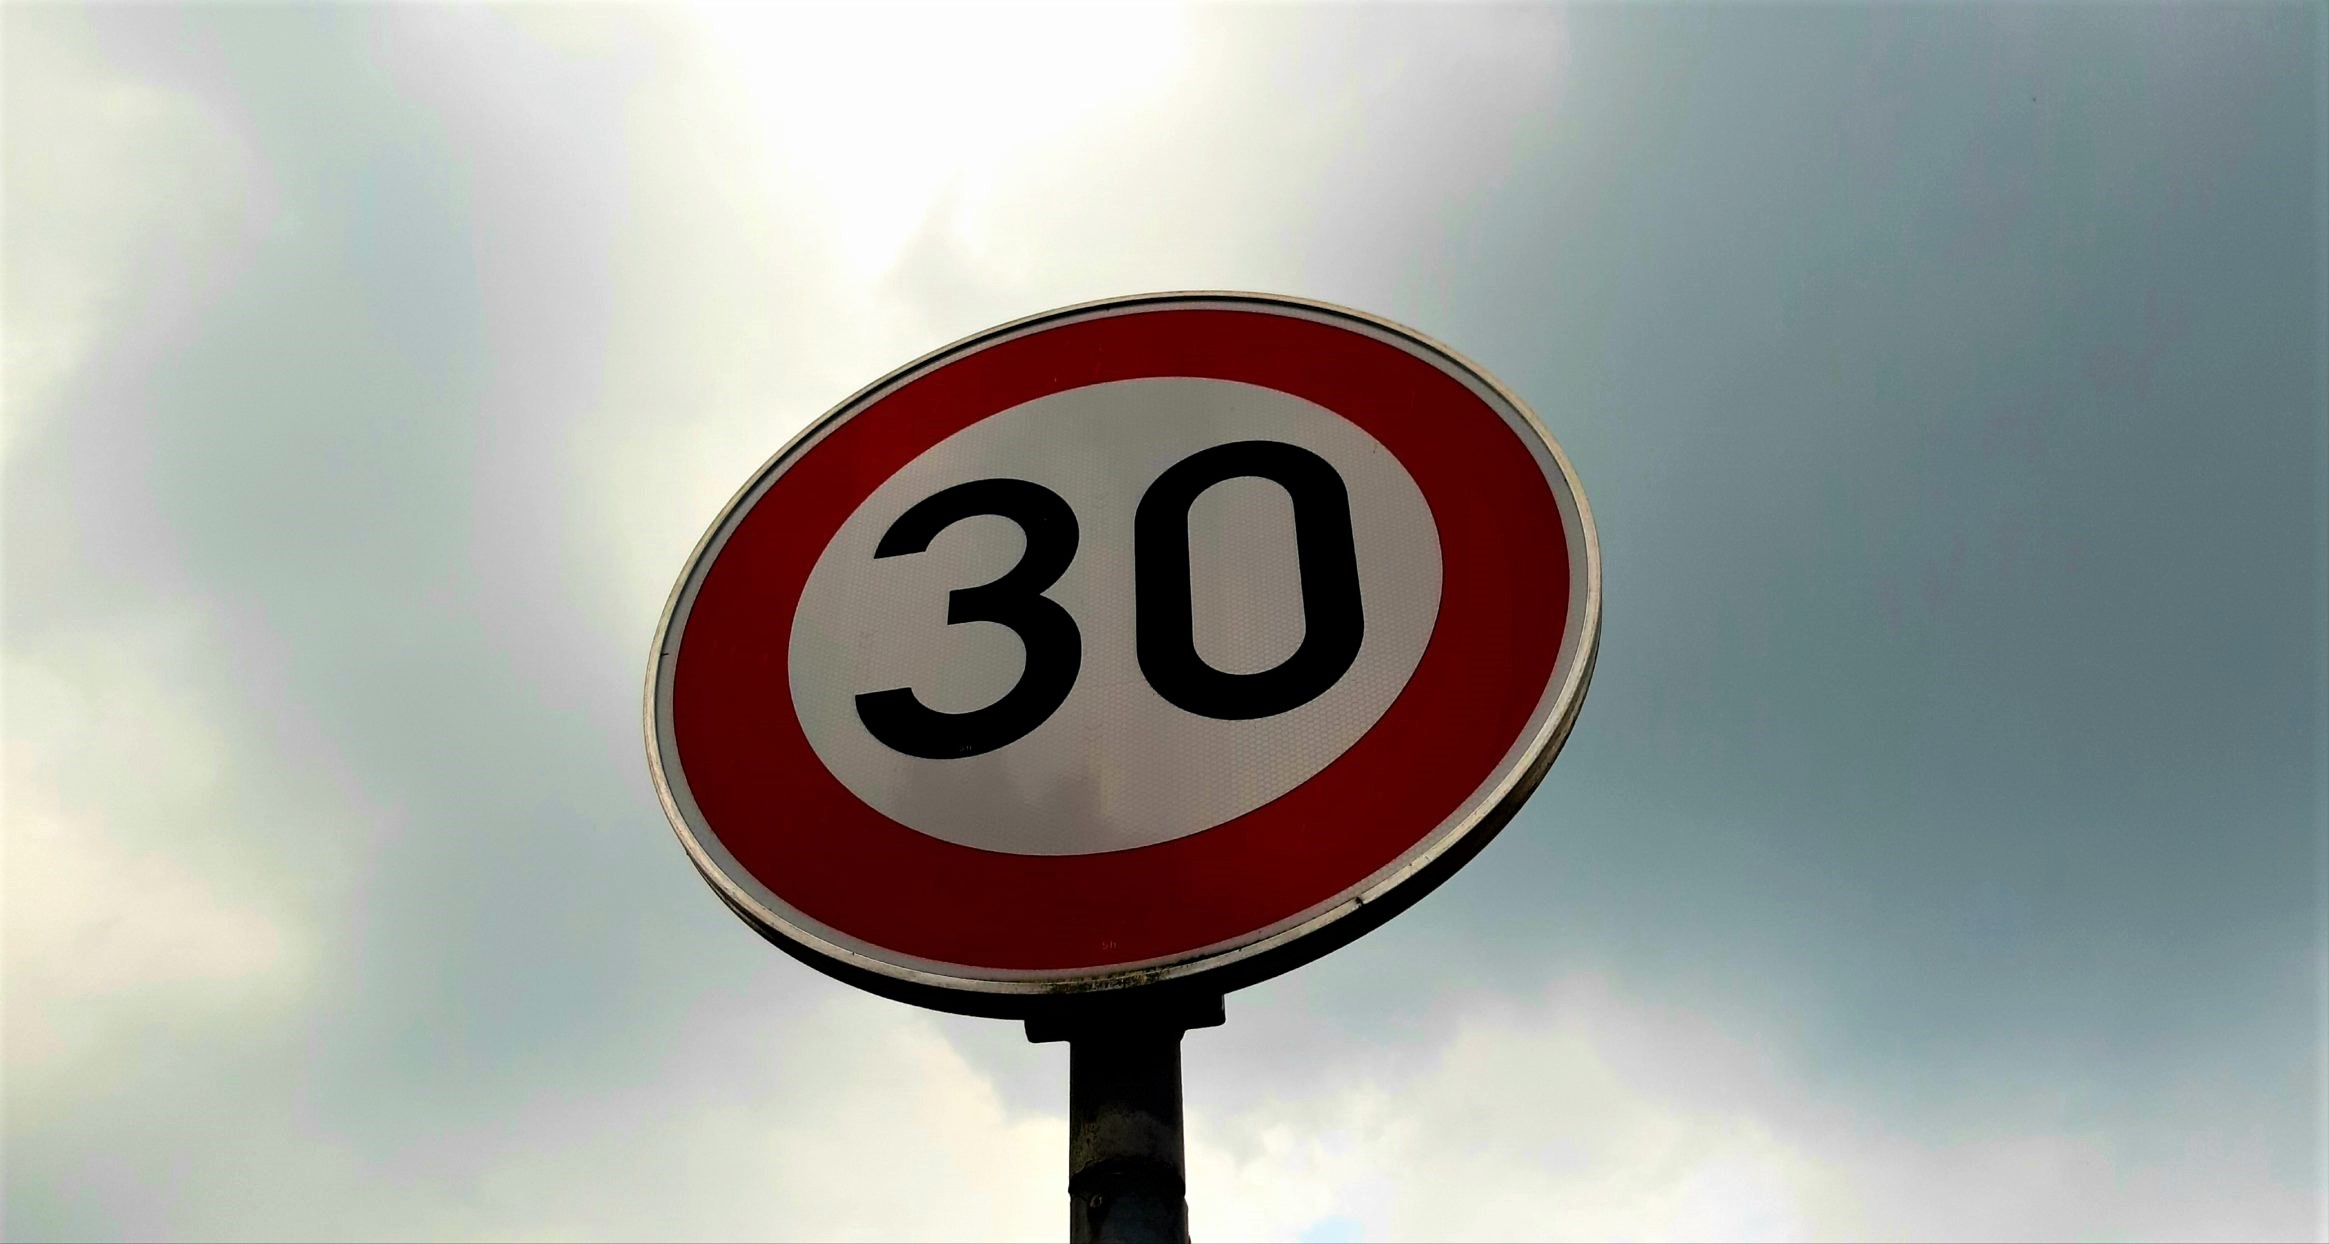 Leichter Tempo 30, Umweltspuren, Radstraßen: Amsterdam hat jetzt „die 30“ – In Deutschland blockieren Länder